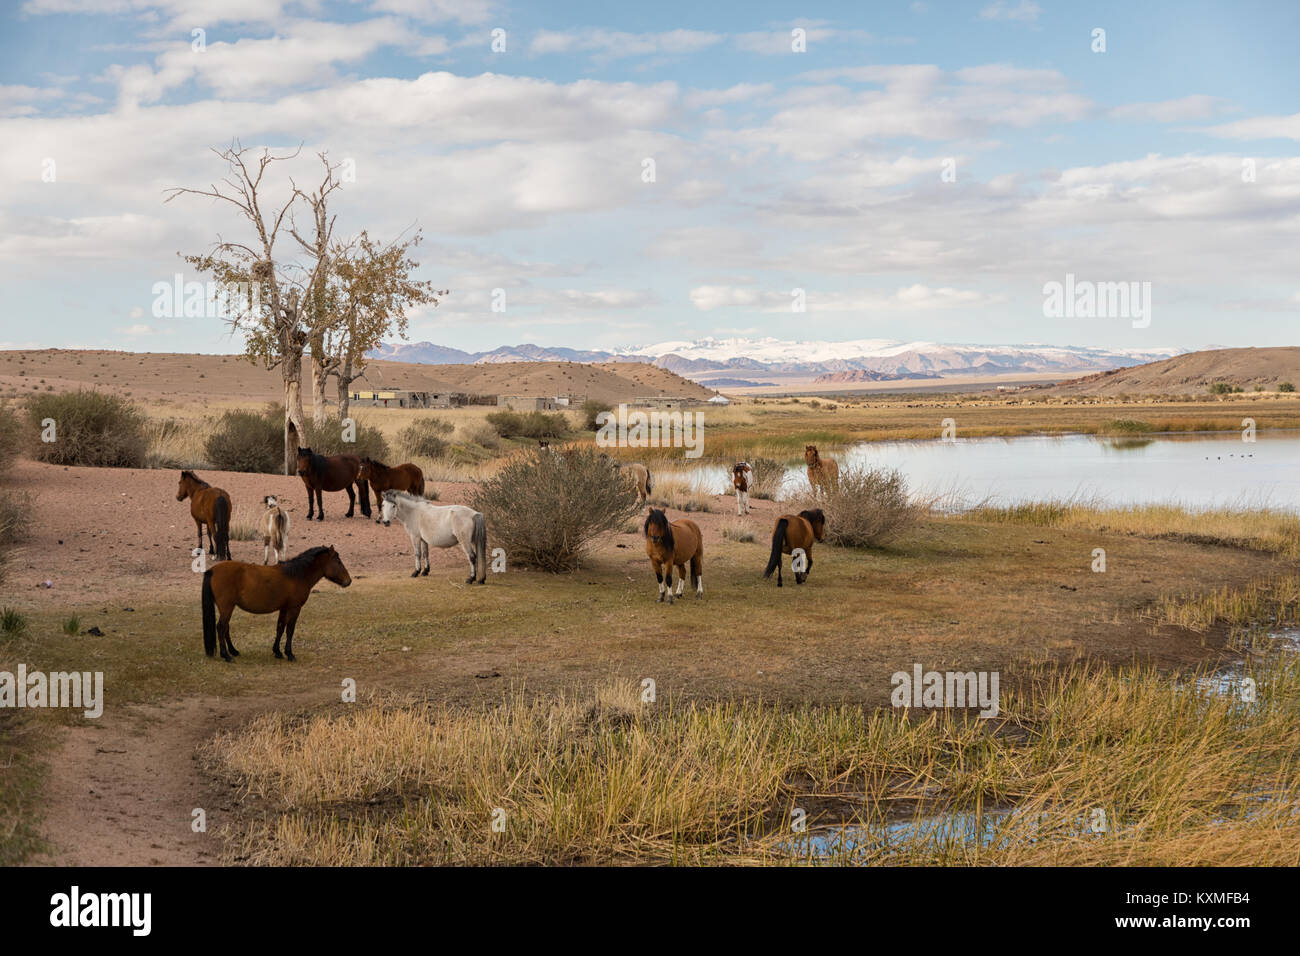 Au repos des chevaux de Mongolie Mongolie river bank Banque D'Images